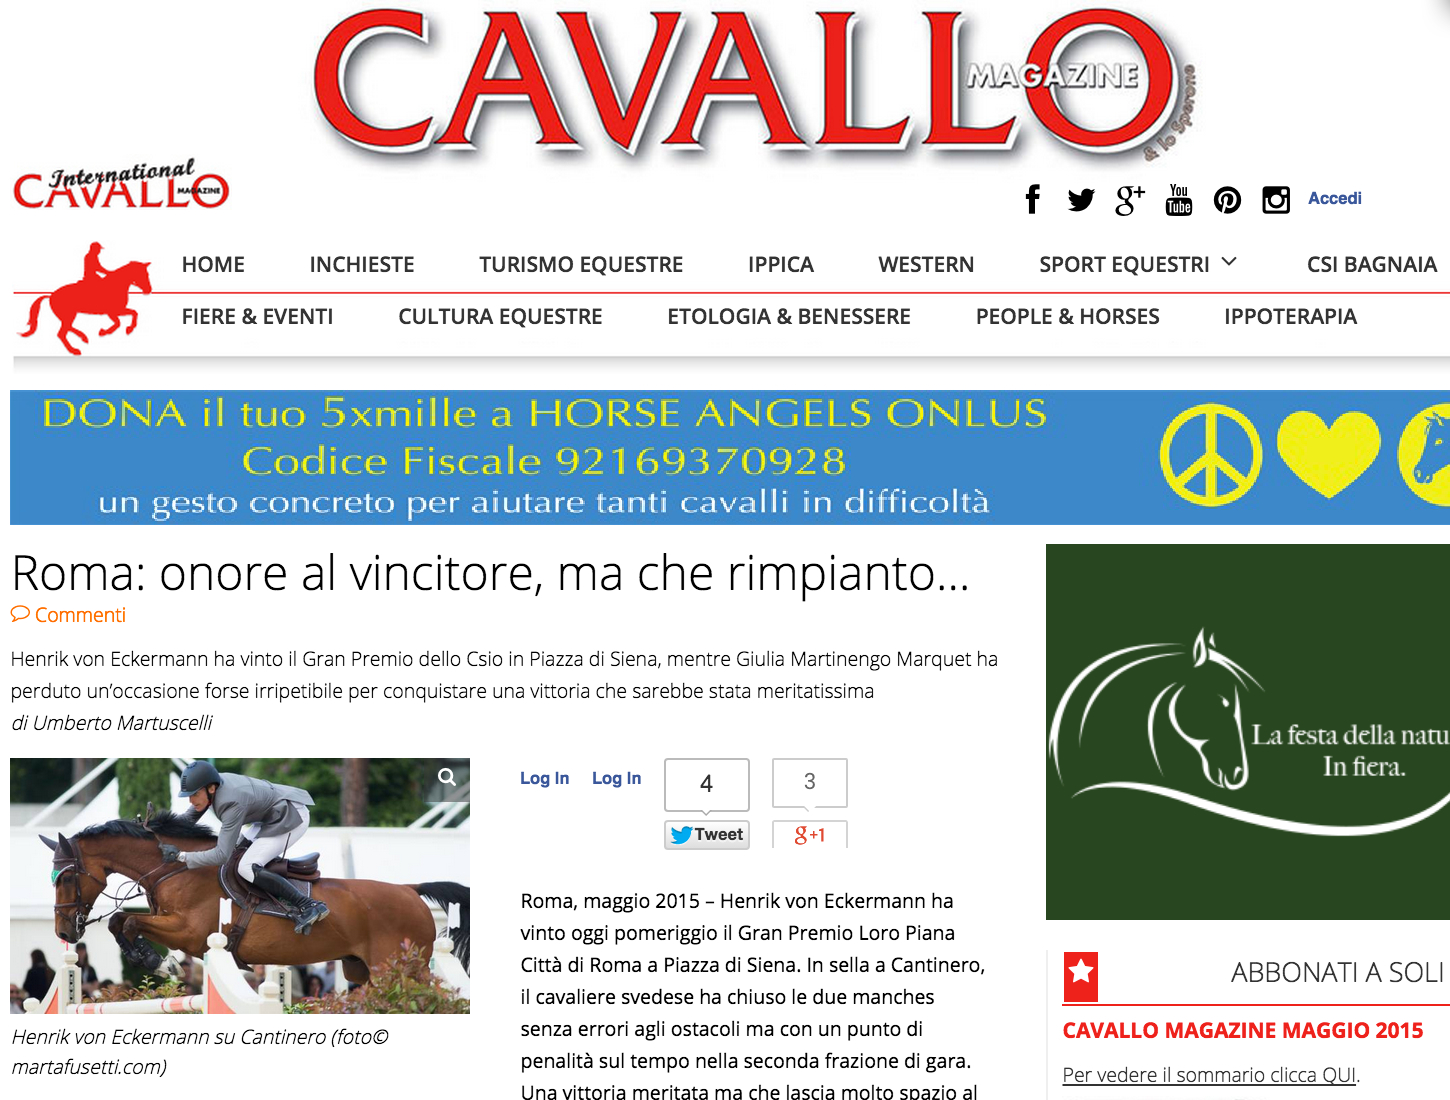 csio roma_giulia martinengo_cavallo magazine_umberto martuscelli